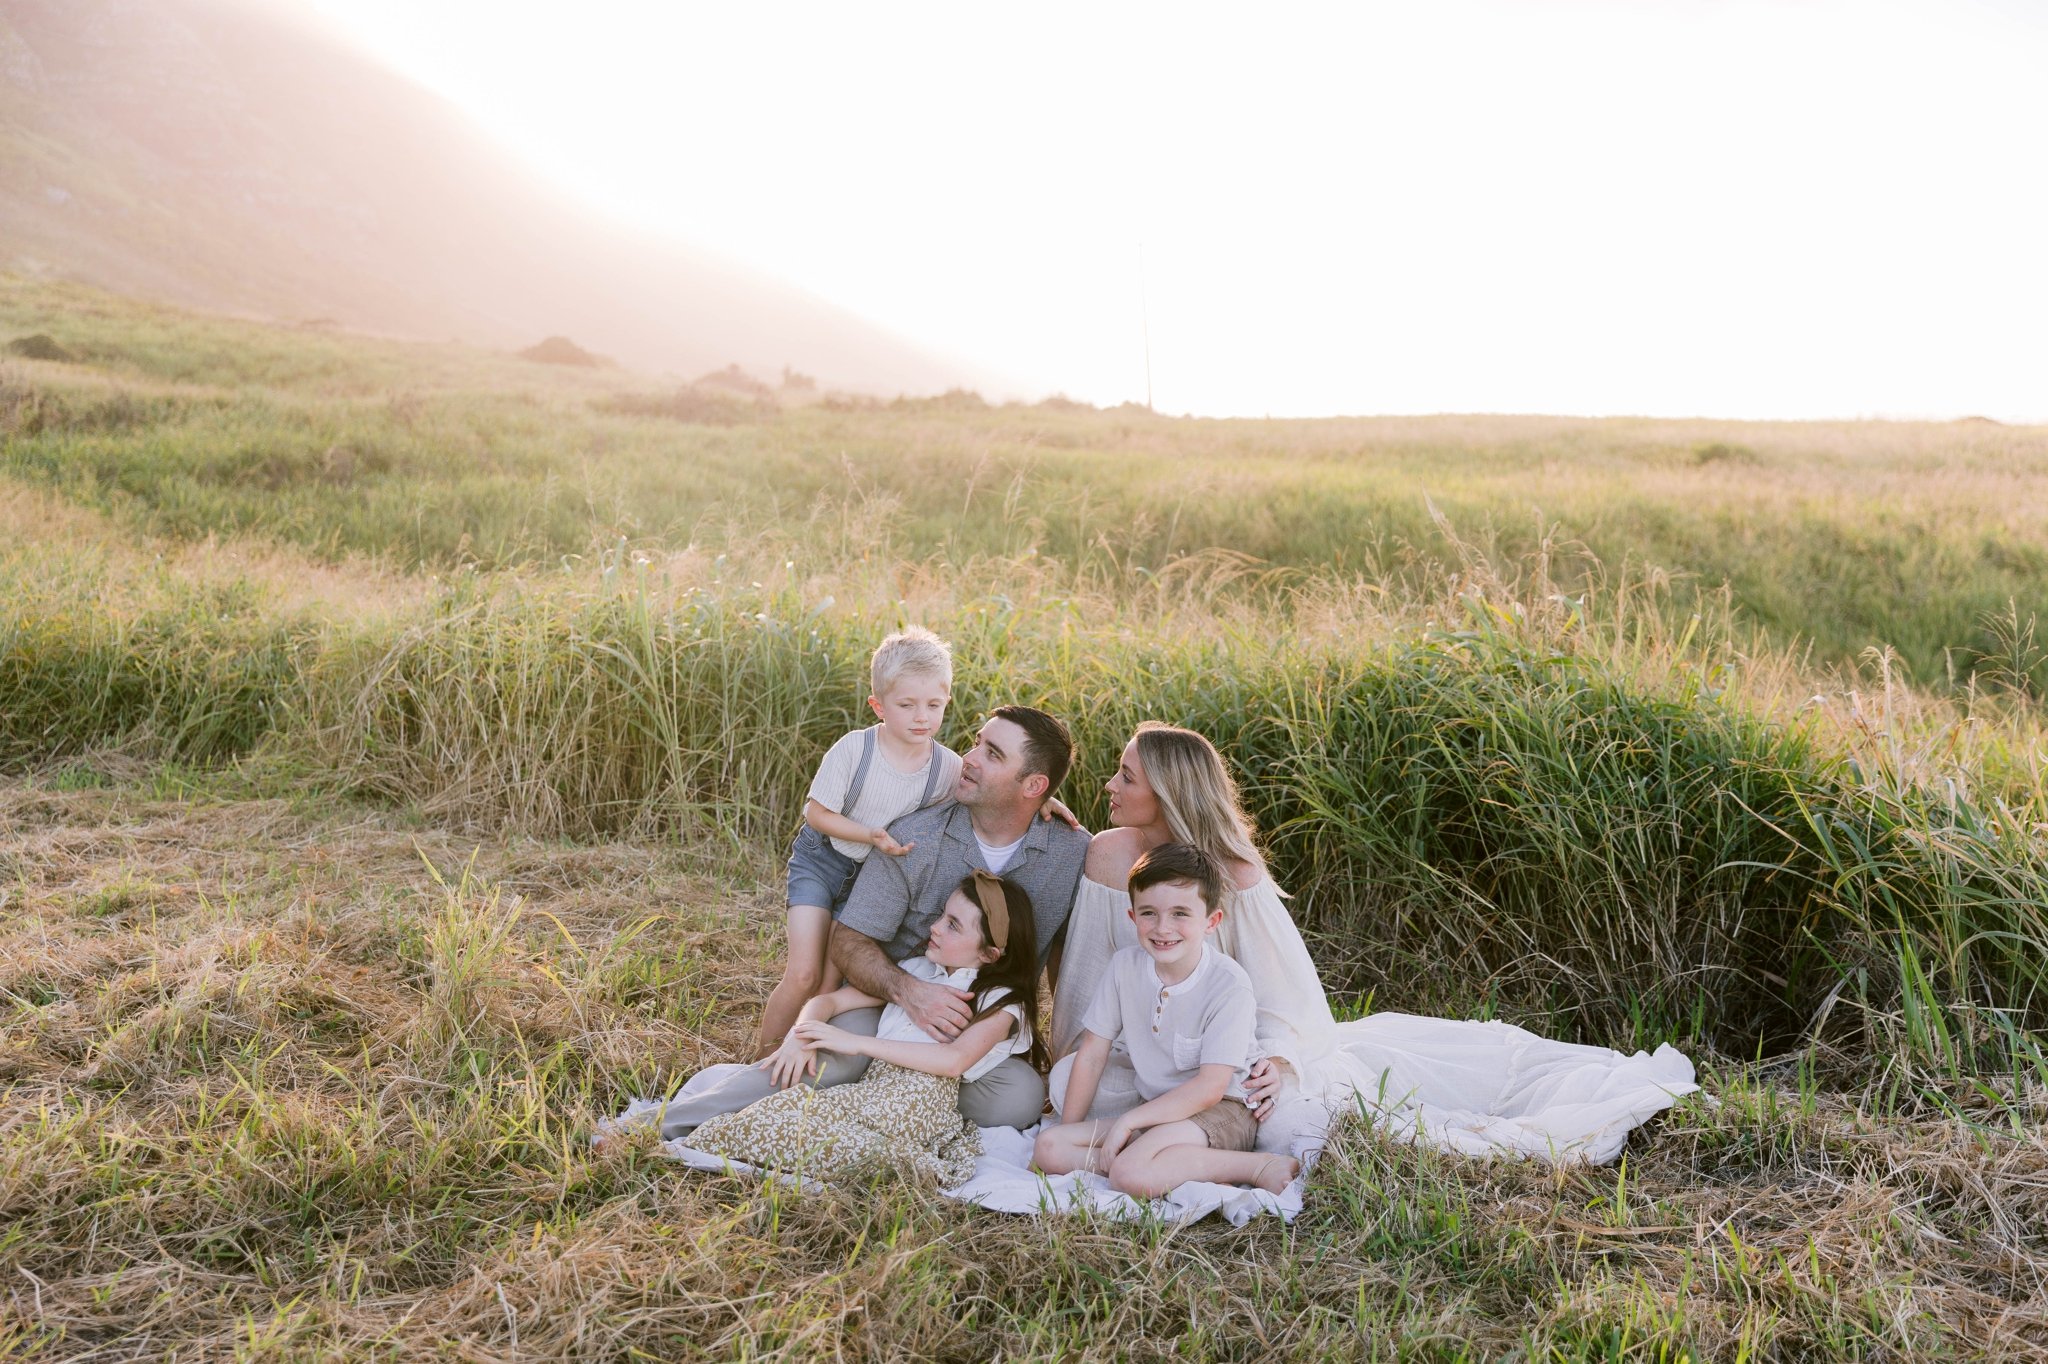 Emotional Family Photography Session on Oahu, Hawaii - Honolulu Photographer